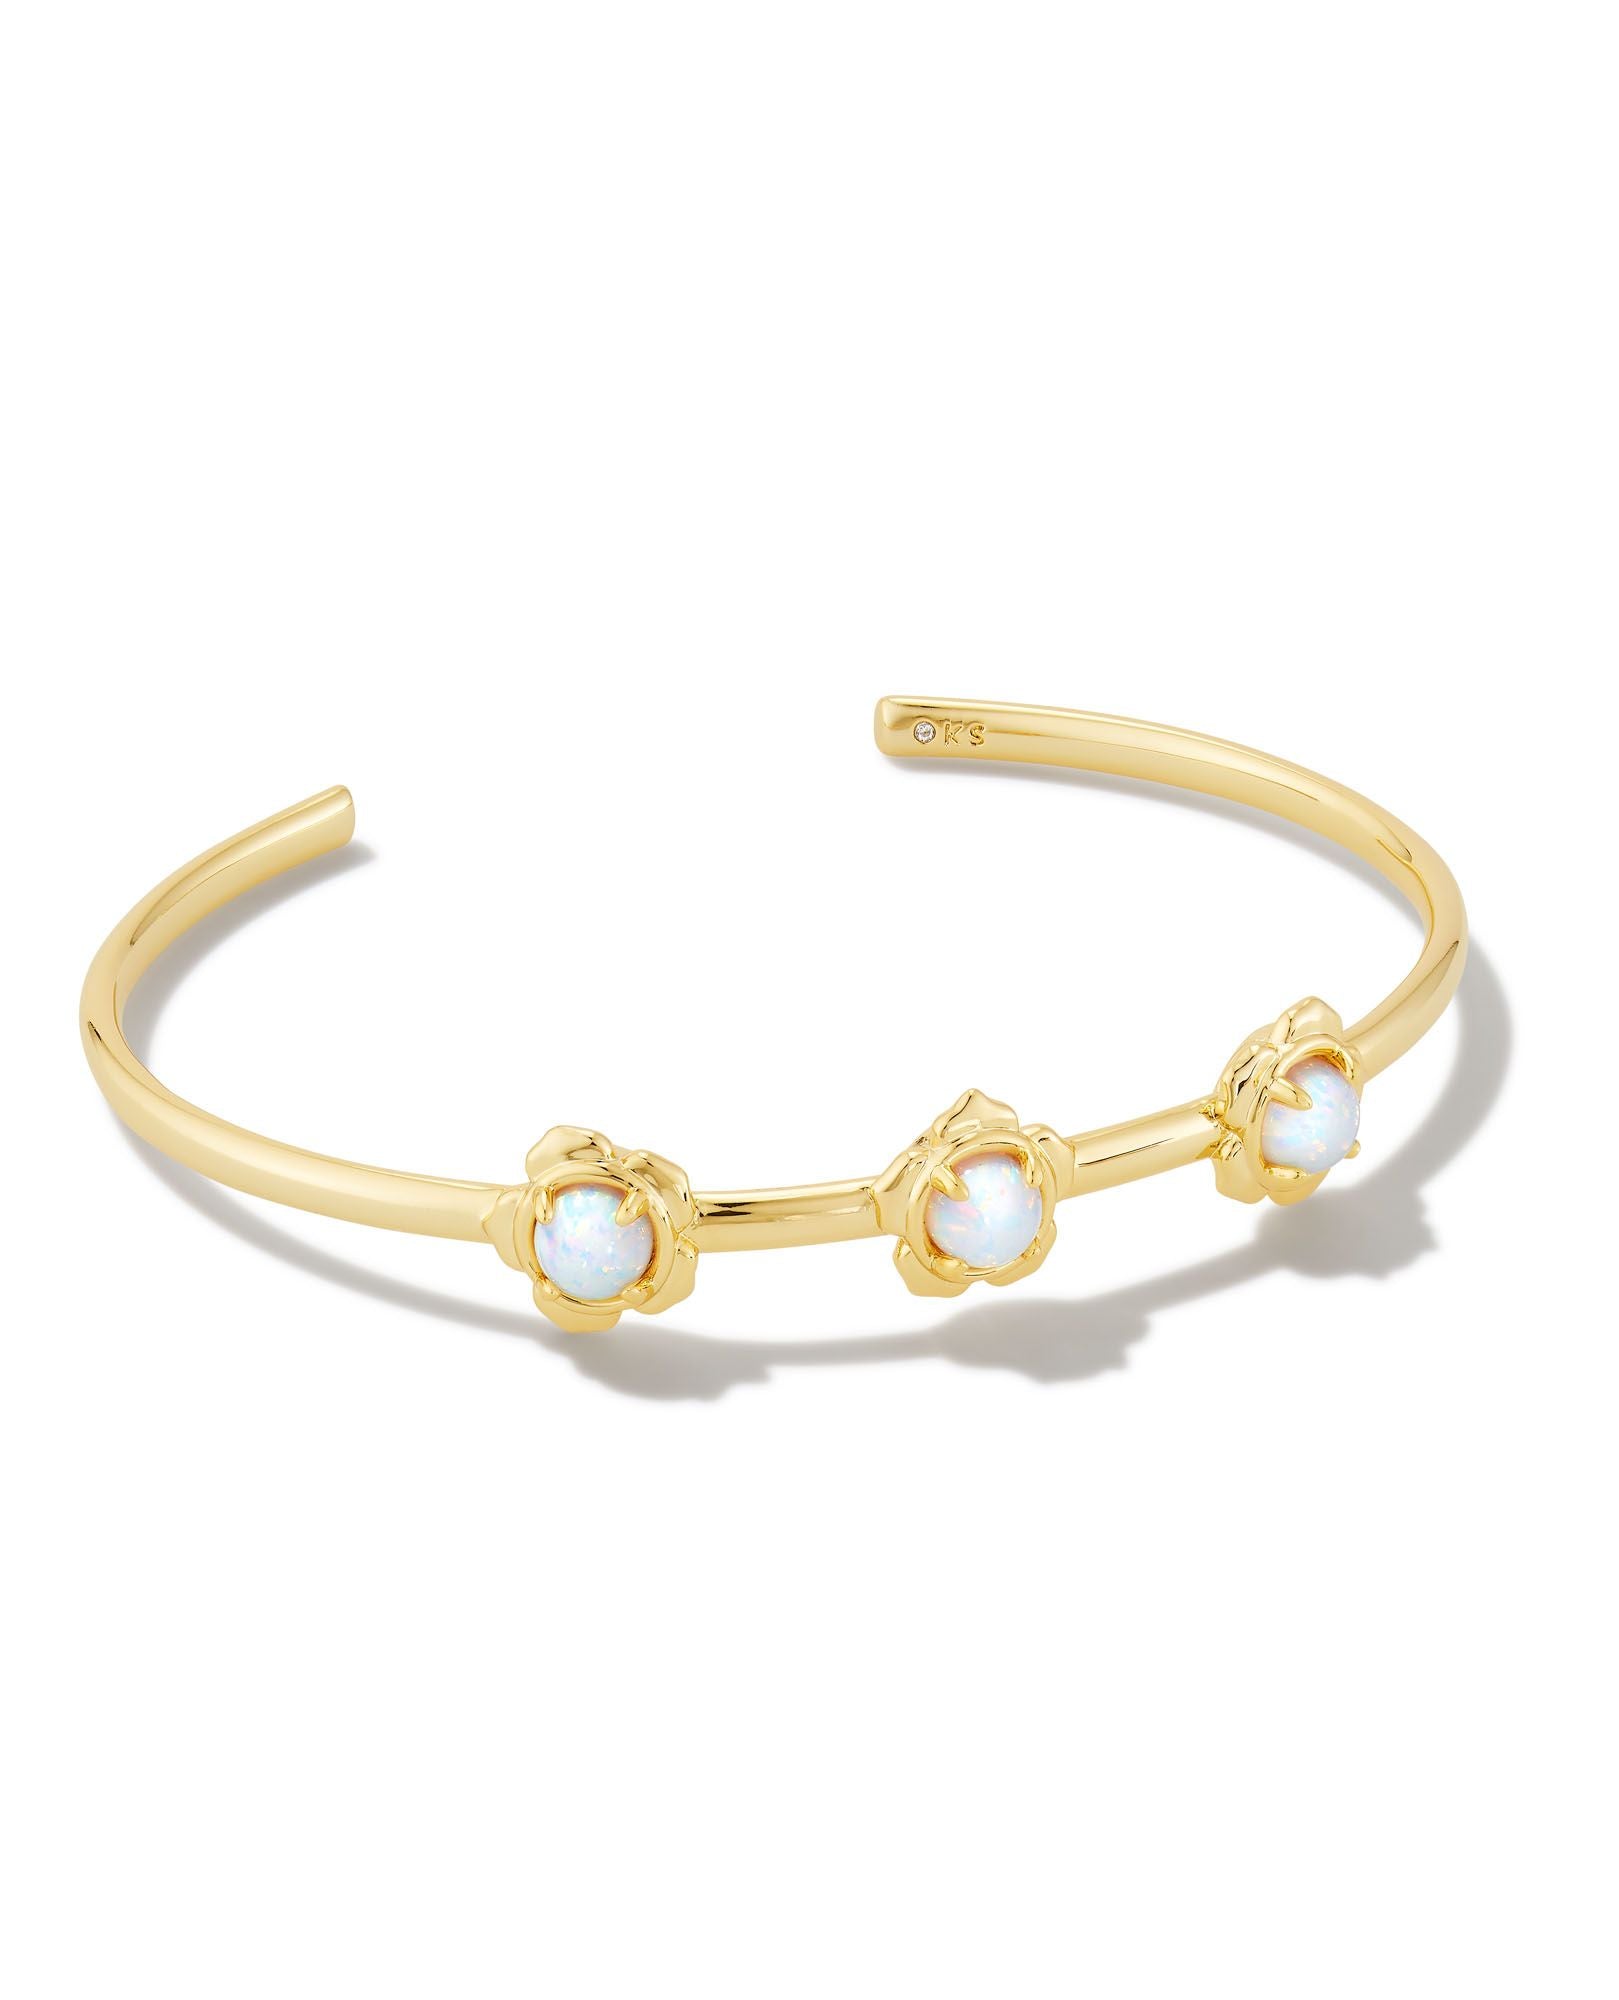 Susie Cuff Bracelet in Gold Bright White Opal